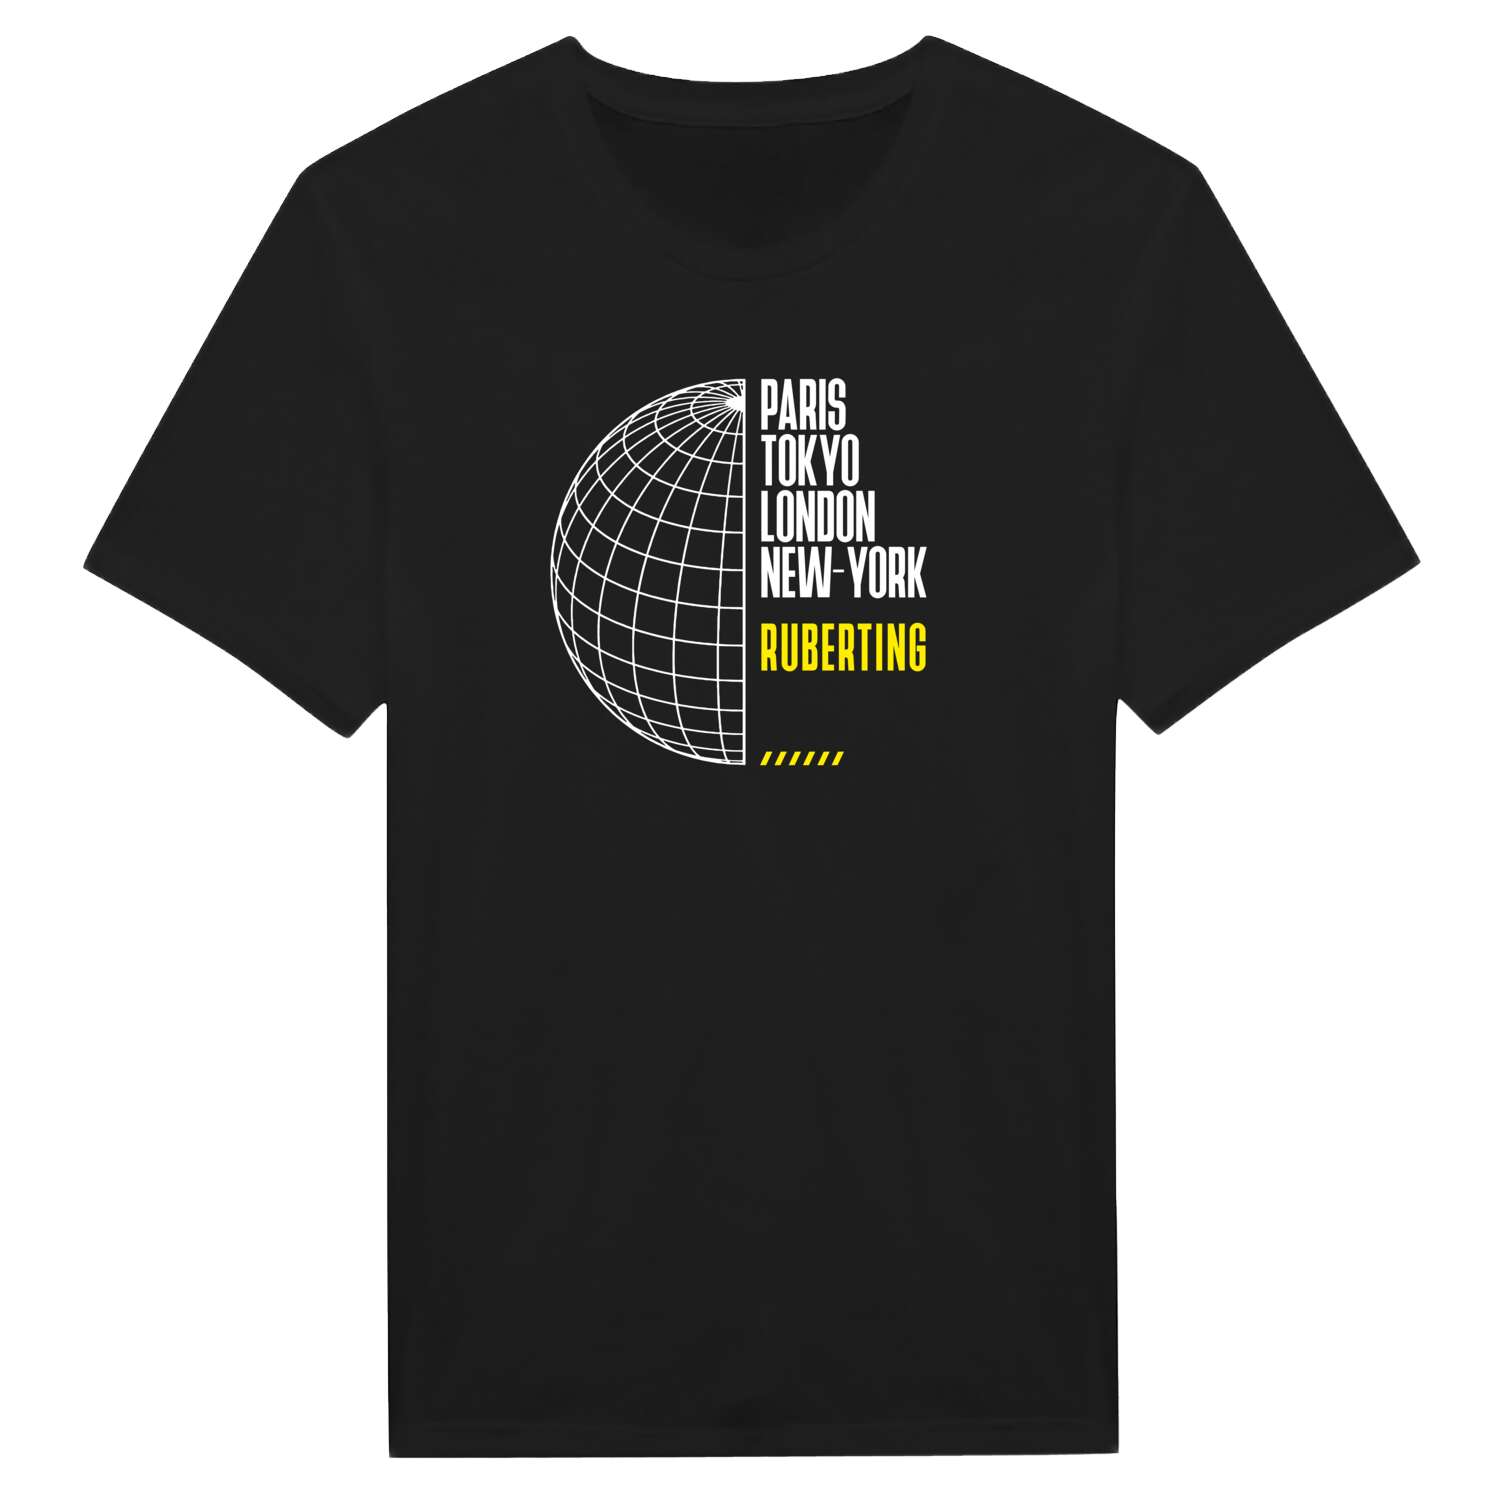 Ruberting T-Shirt »Paris Tokyo London«